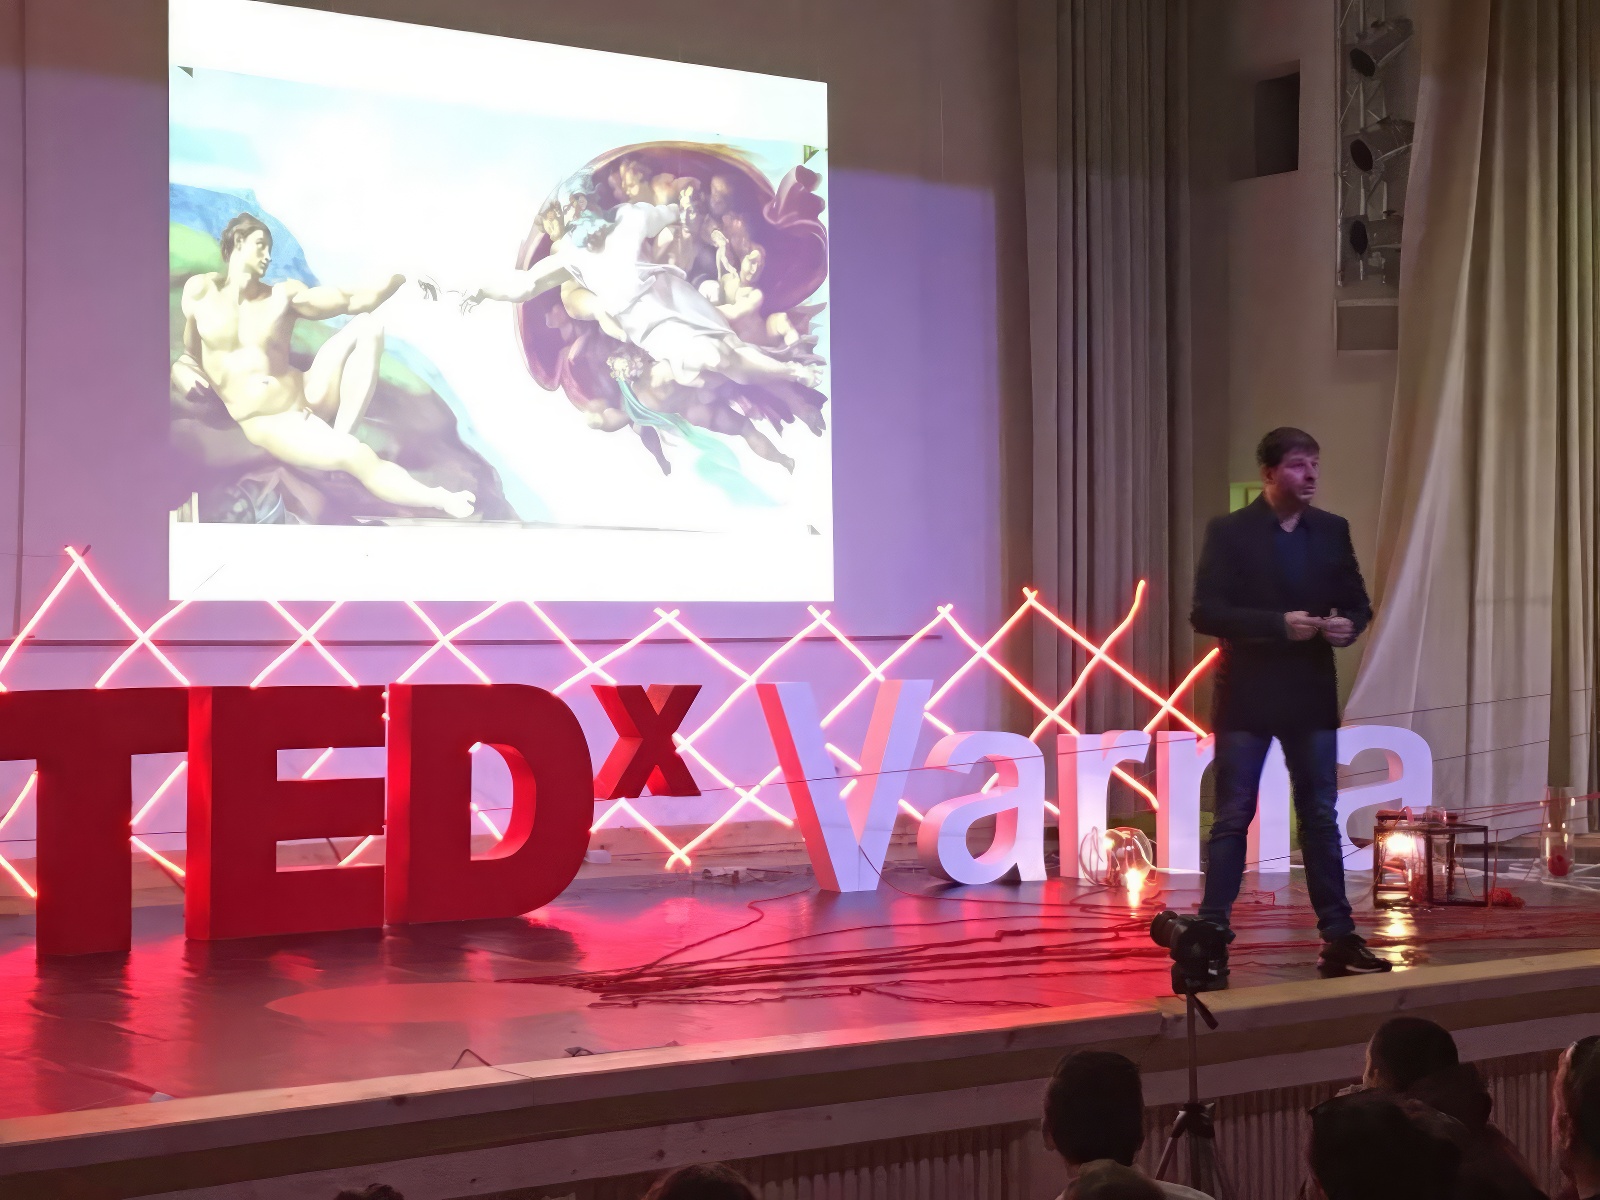 Plamen Russev on TEDx stage